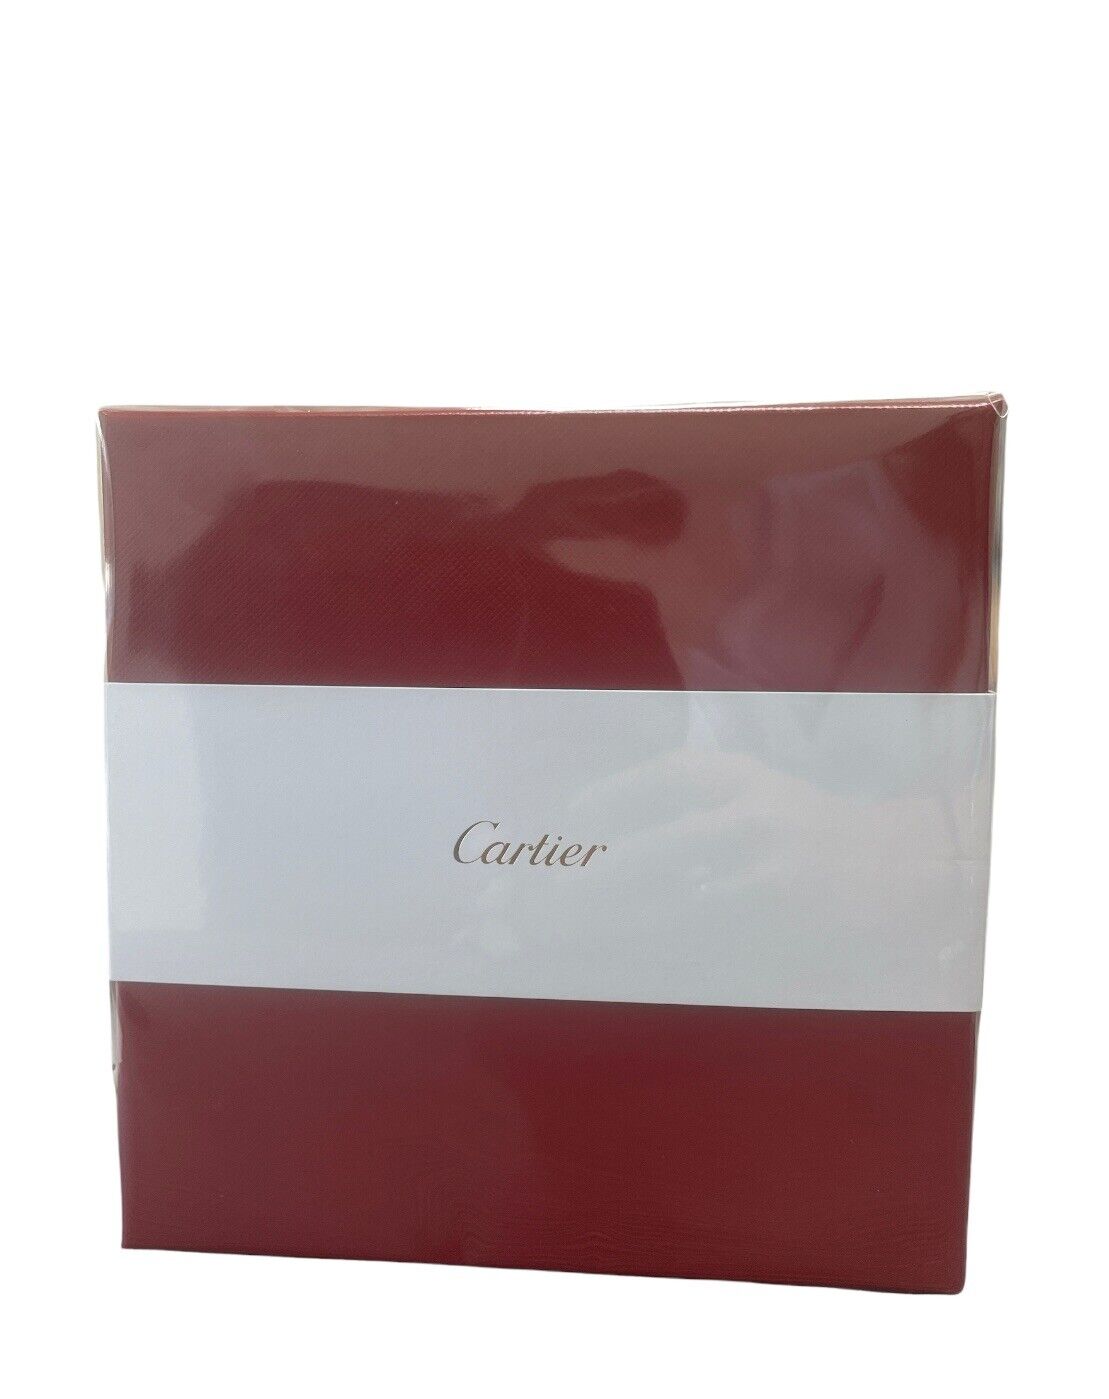 Cartier Mini Set Carat 6ml/La Panthere 6ml/Baiser Vole 6ml/Eau de Cartier 6ml